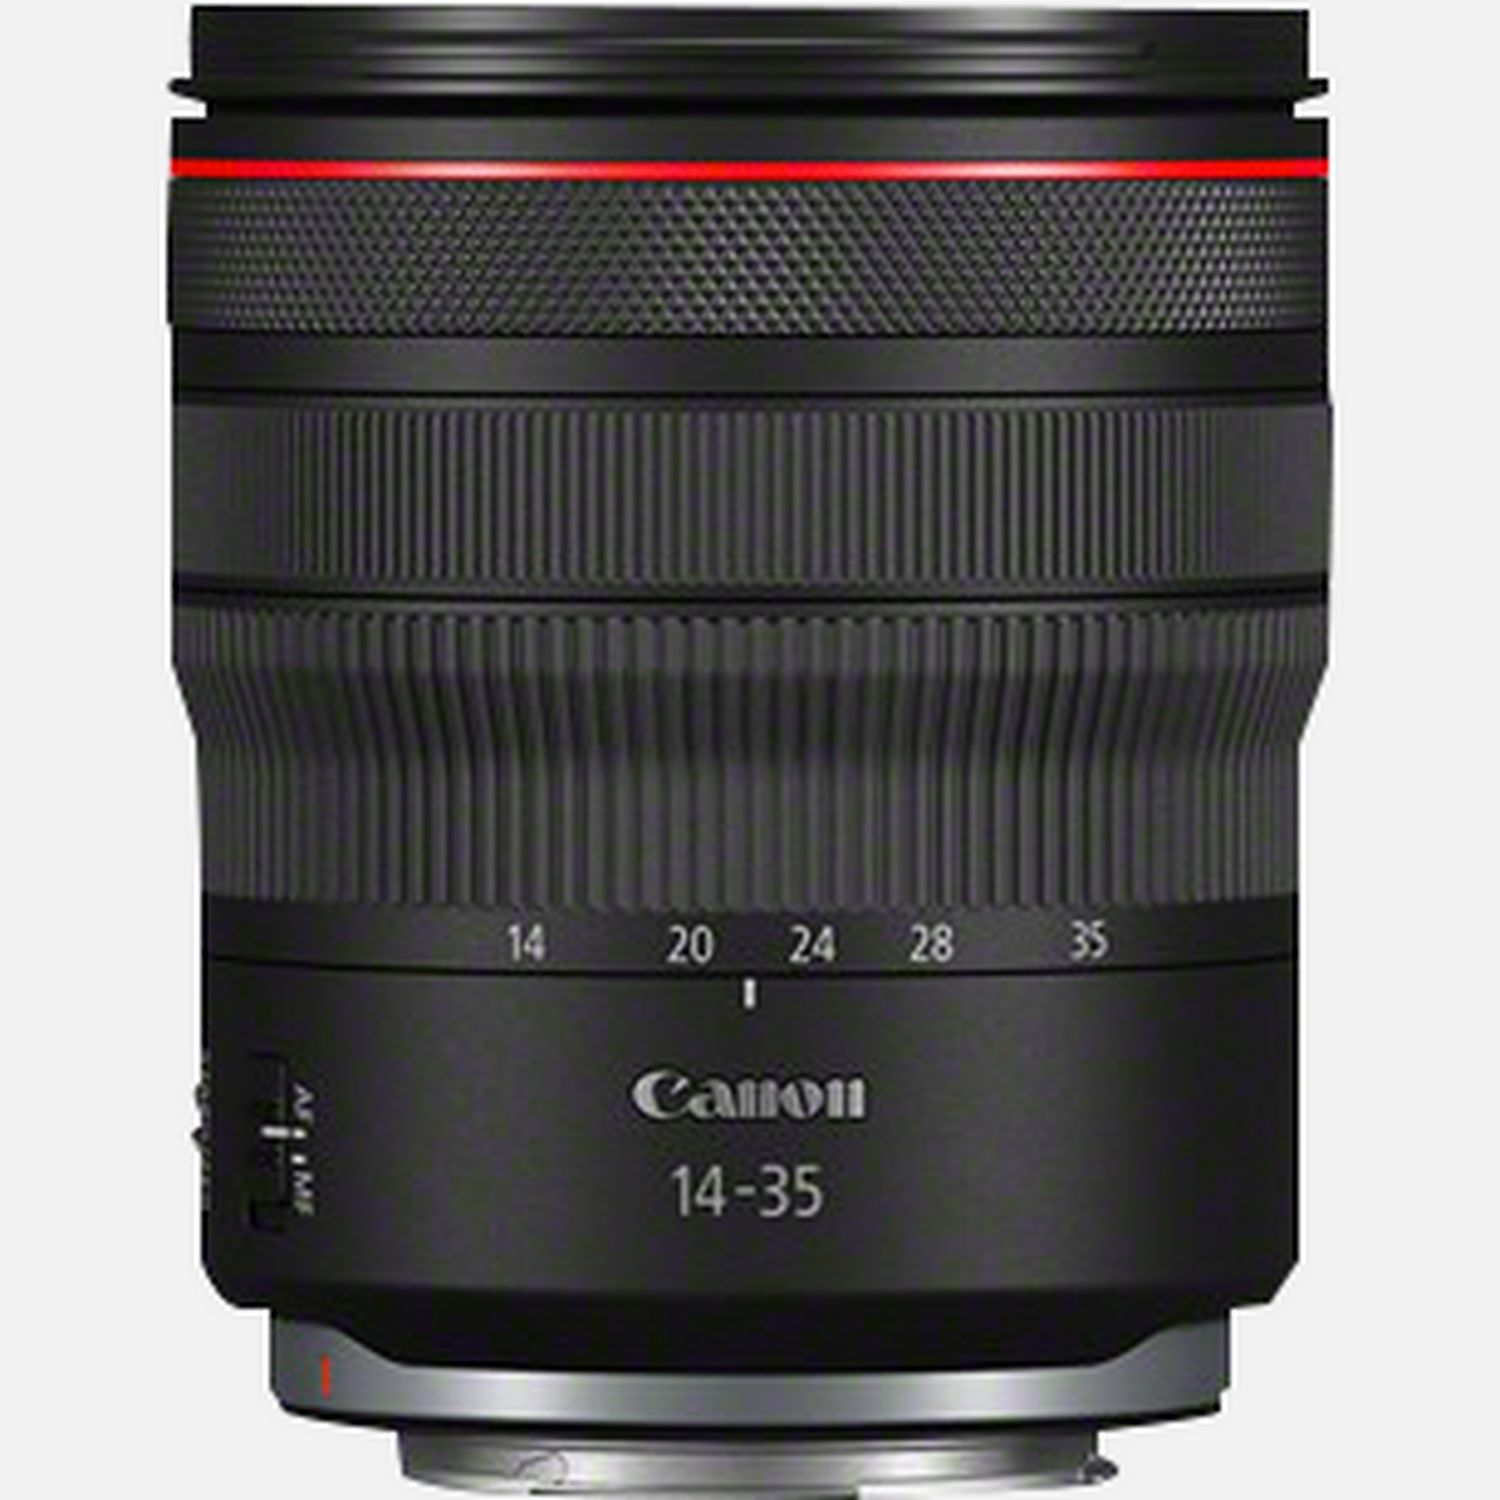 Image of Obiettivo Canon RF 14-35mm F4 L IS USM